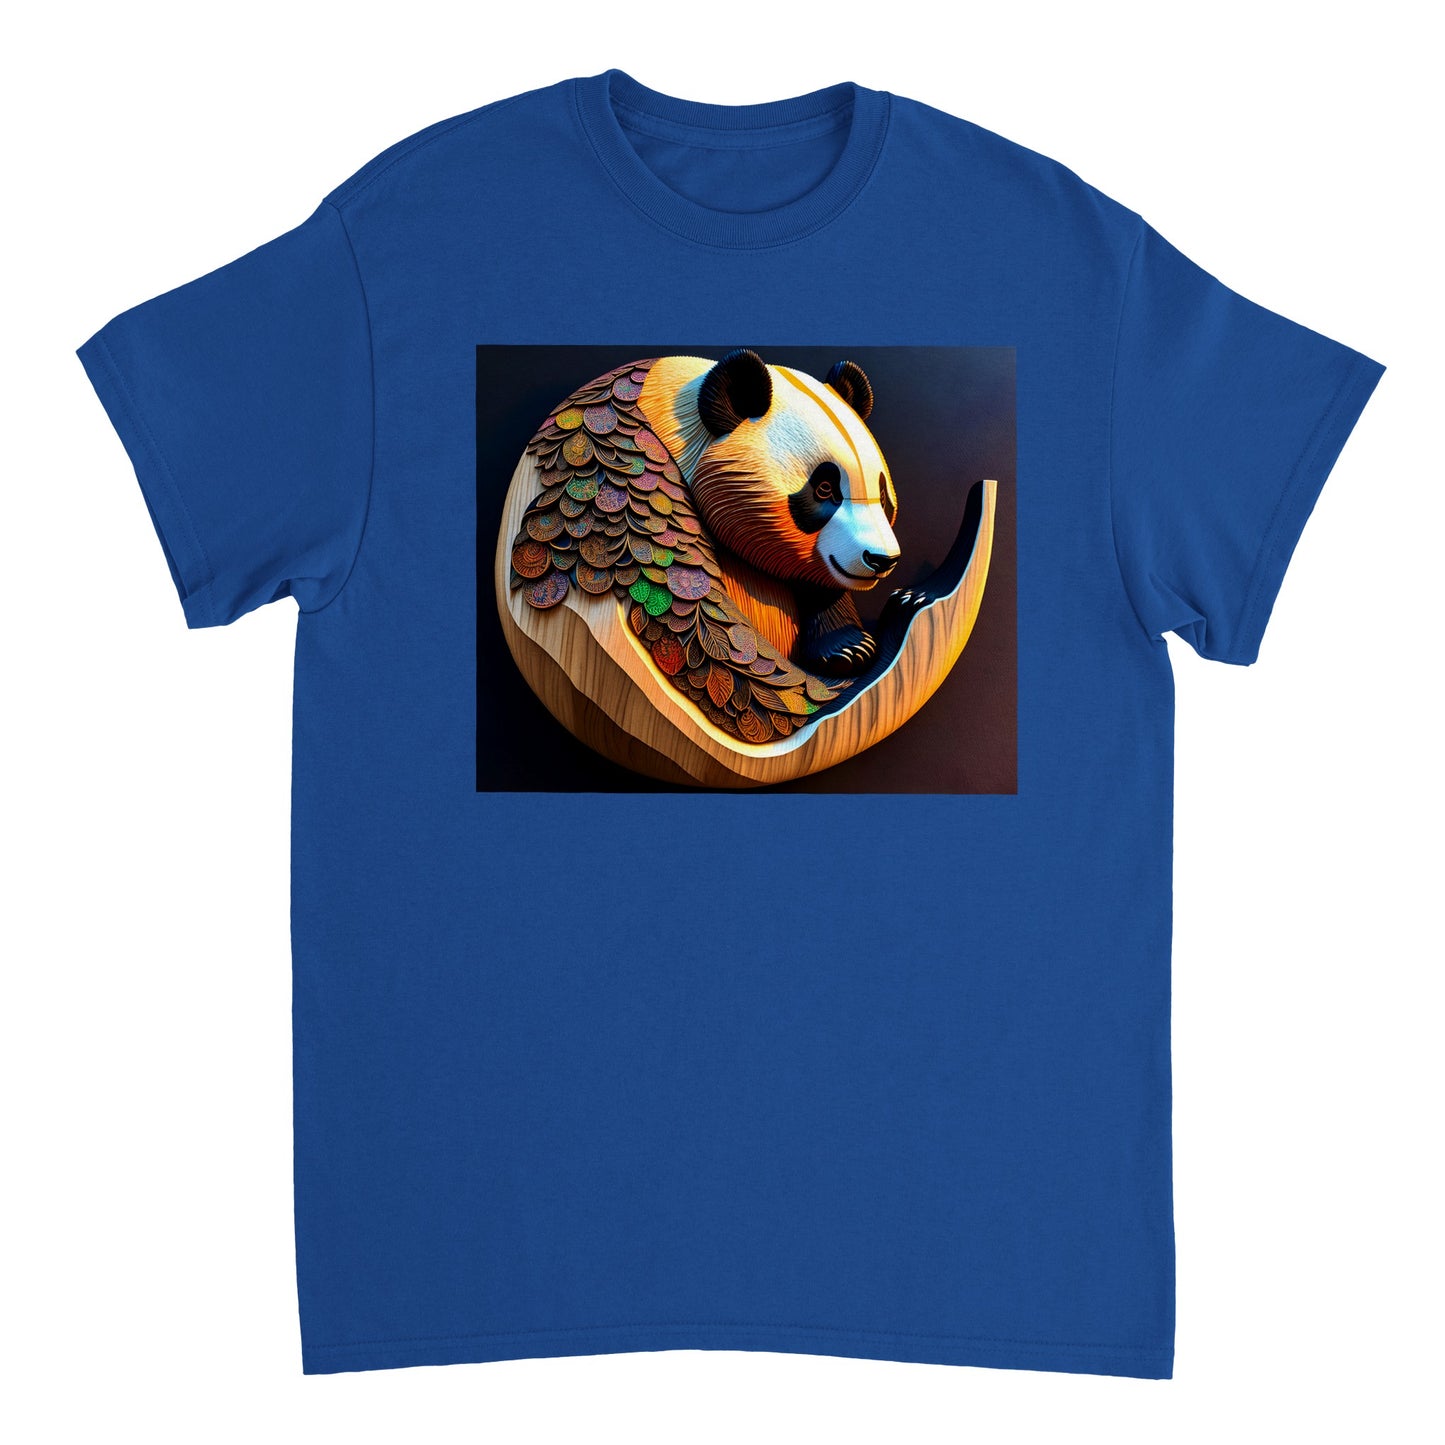 3D Wooden Animal Art - Heavyweight Unisex Crewneck T-shirt 88